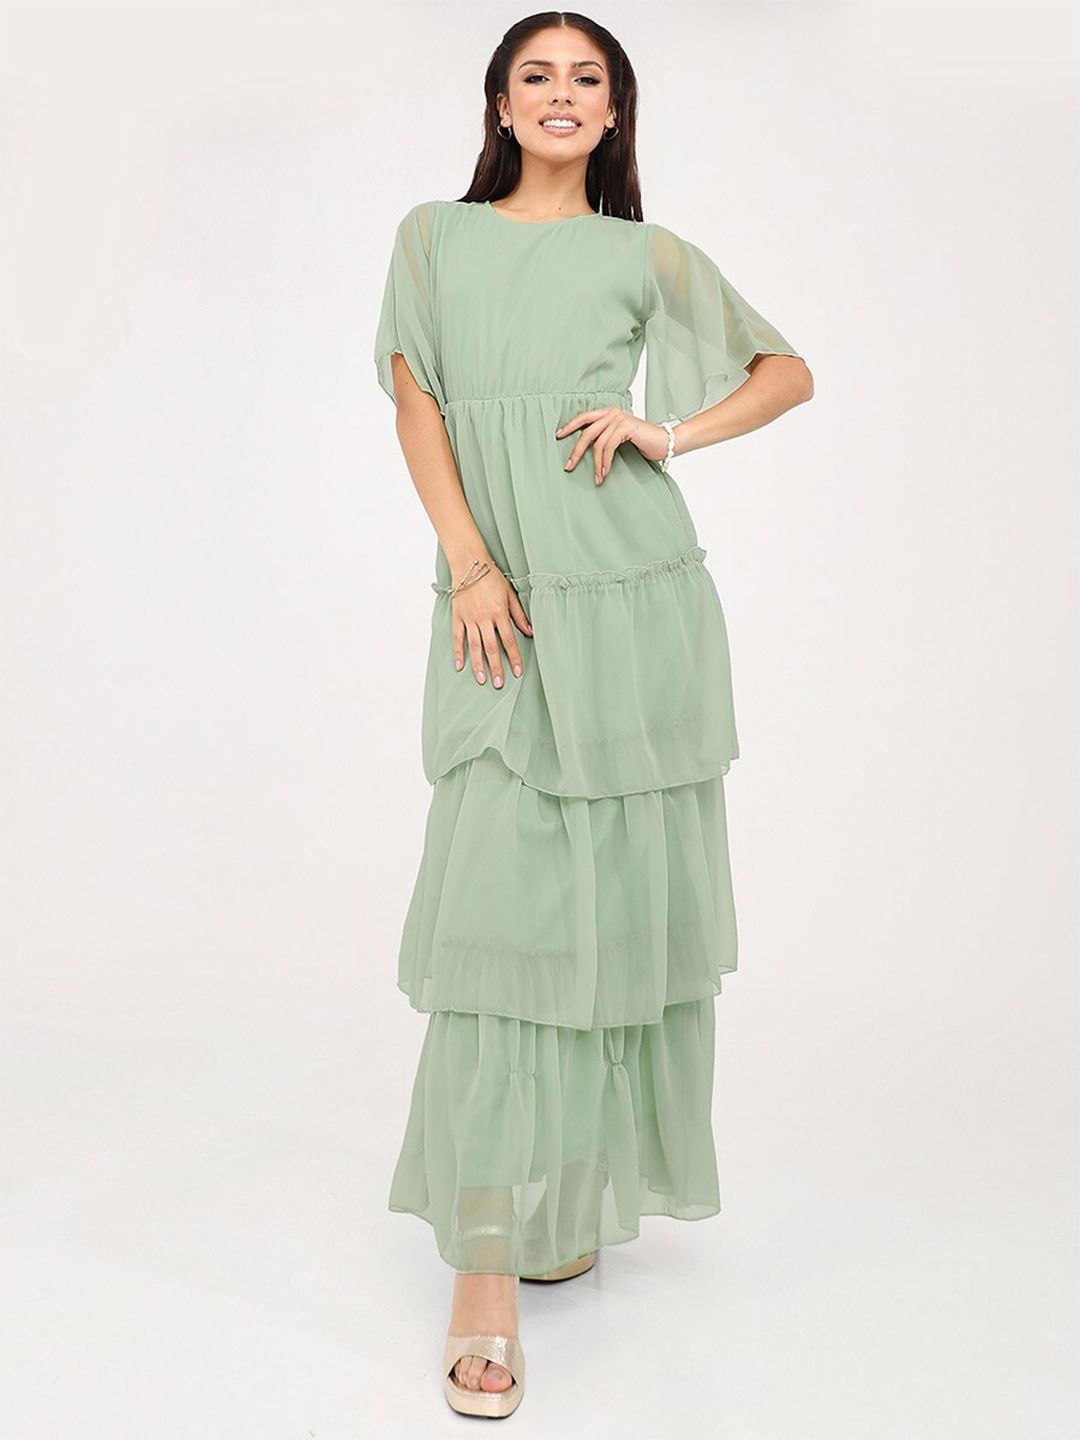 Styli Green Maxi Maxi Dress Price in India